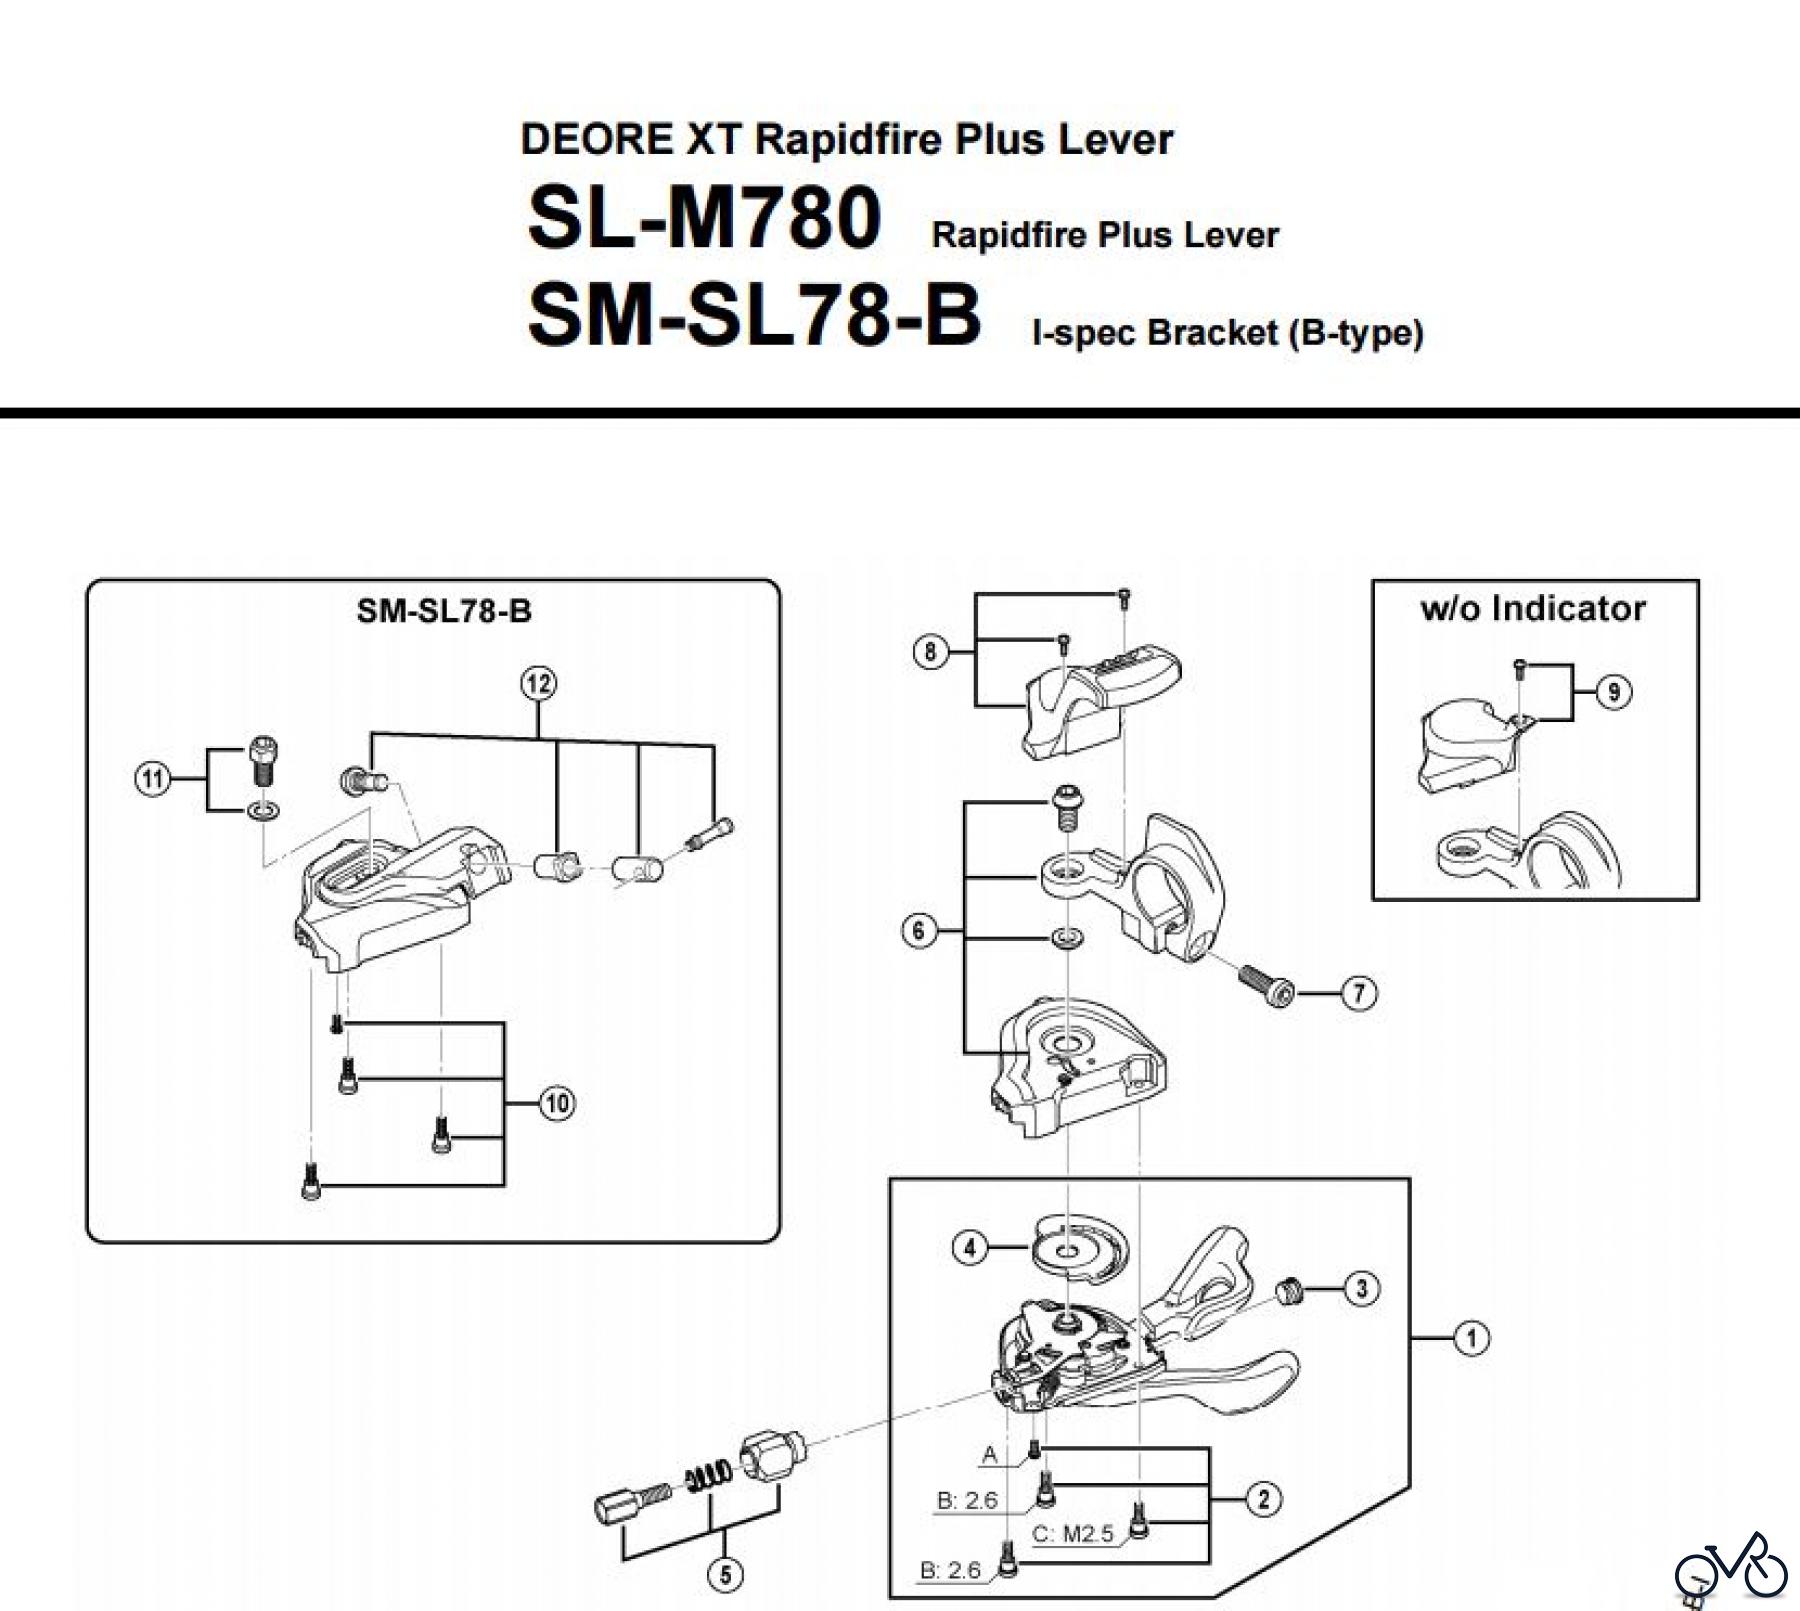  Shimano SL Shift Lever - Schalthebel SL-M780-3183A DEORE XT Rapidfire Plus Lever